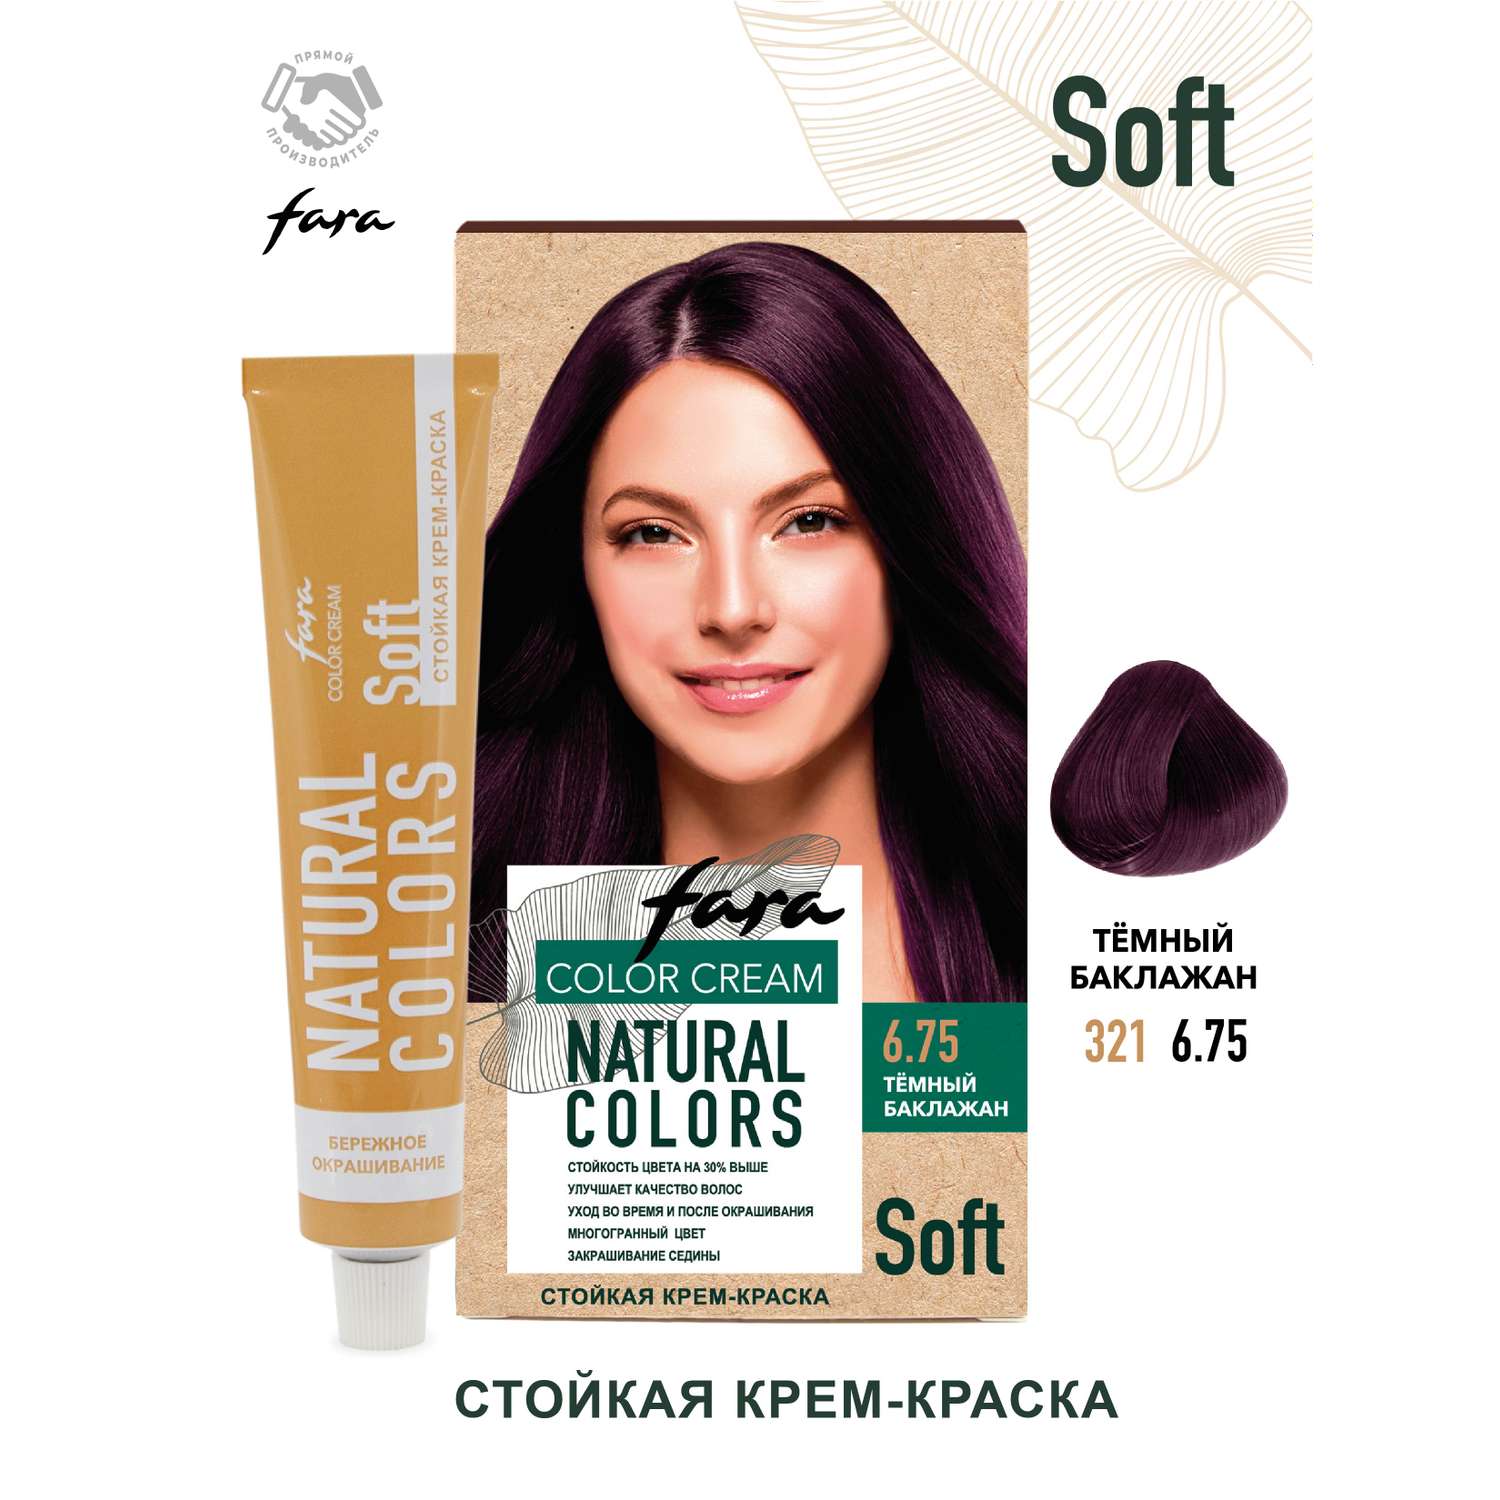 Краска для волос FARA Natural Colors Soft 321 темный баклажан - фото 1